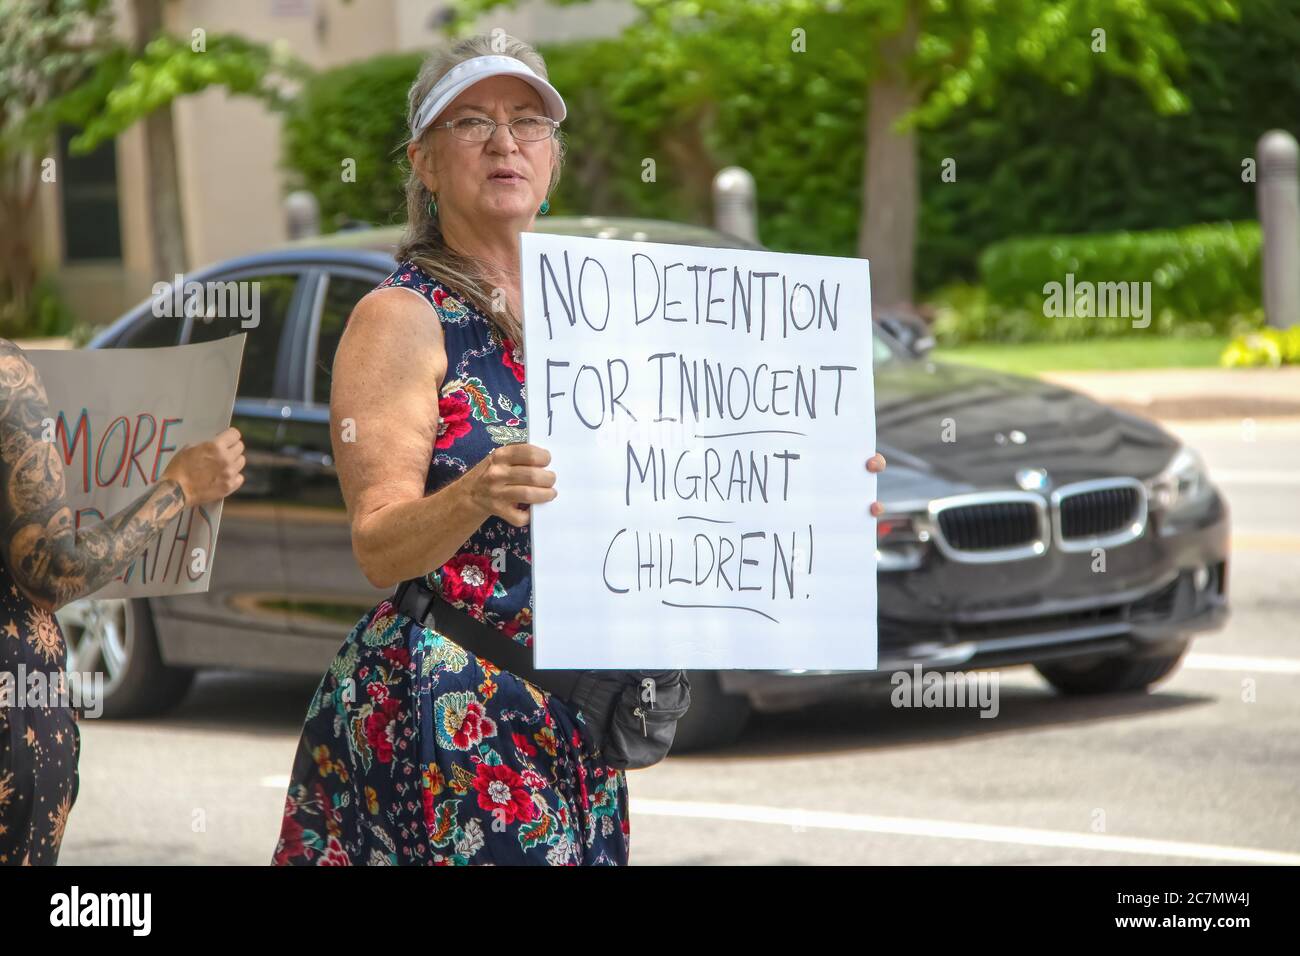 7 2 2019 Tulsa USA aucune détention pour enfants migrants innocents - femme plus âgée en jolie robe et chapeau de soleil tient signe au rallye avec voiture passant par - tatouage Banque D'Images